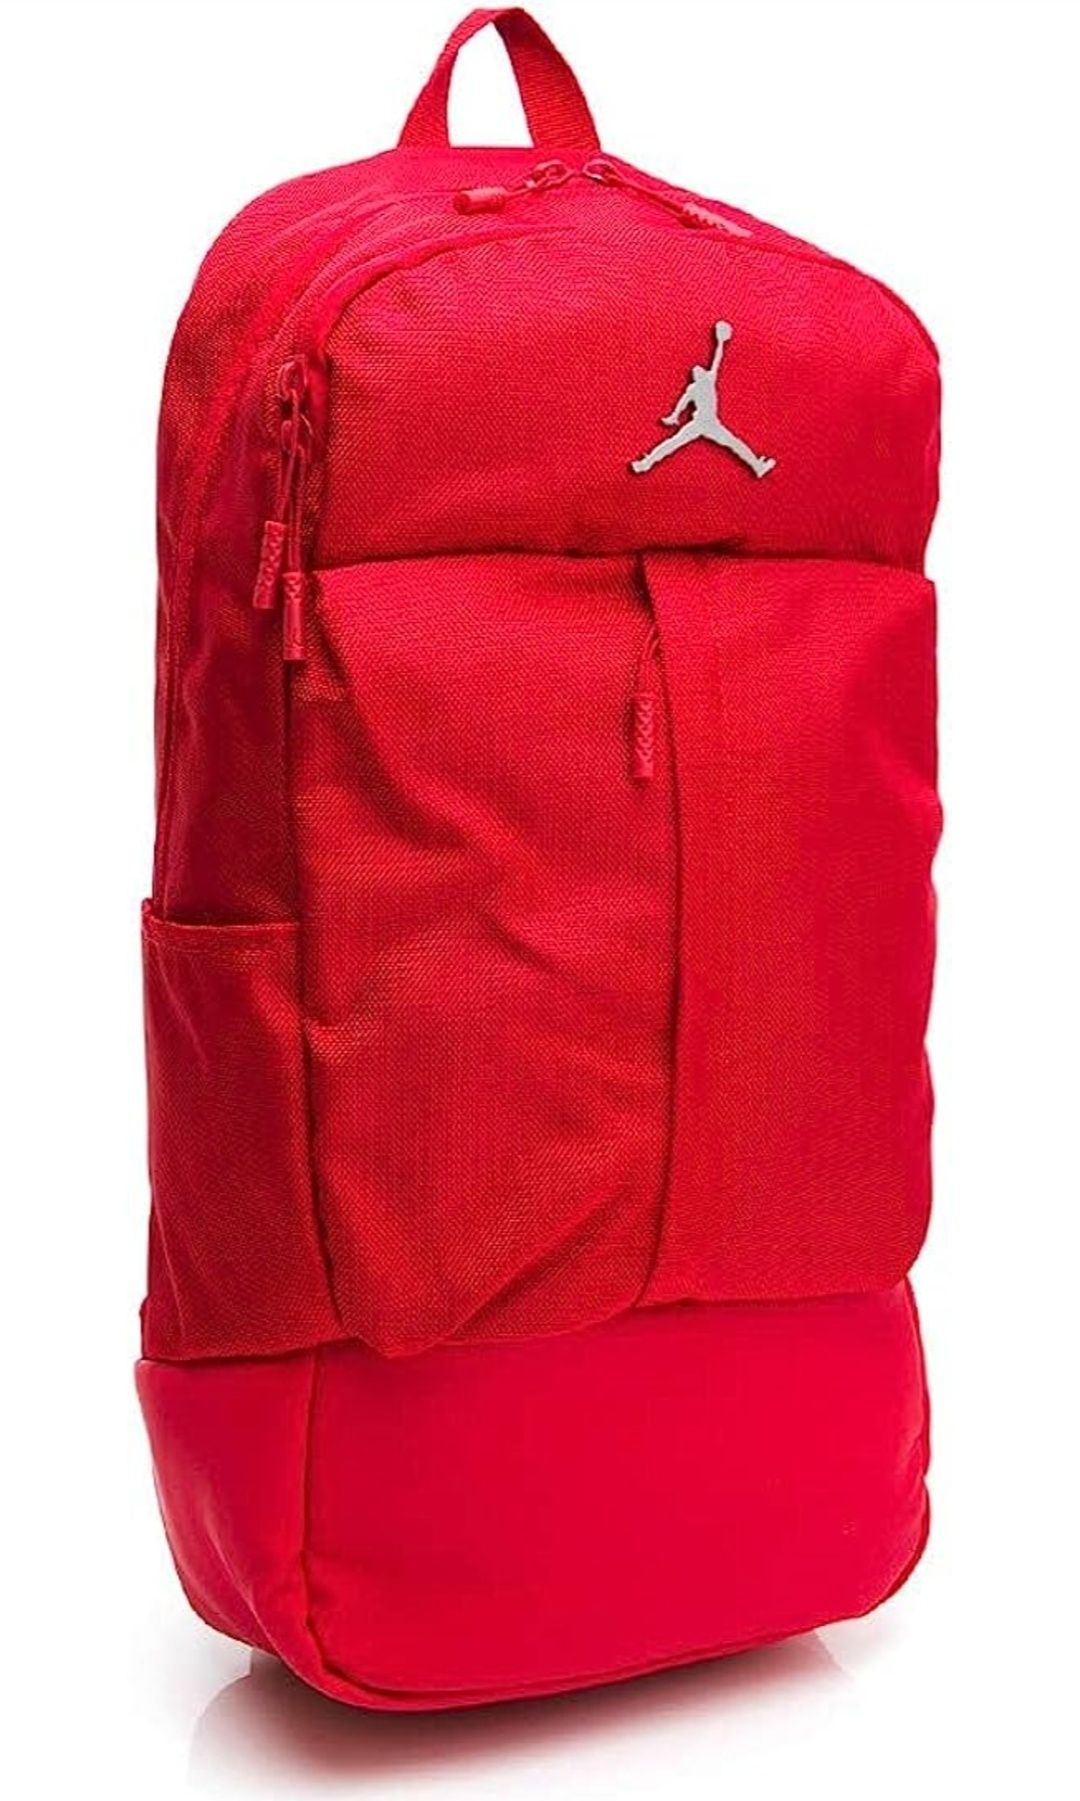 NBA Air Jordan Fluid